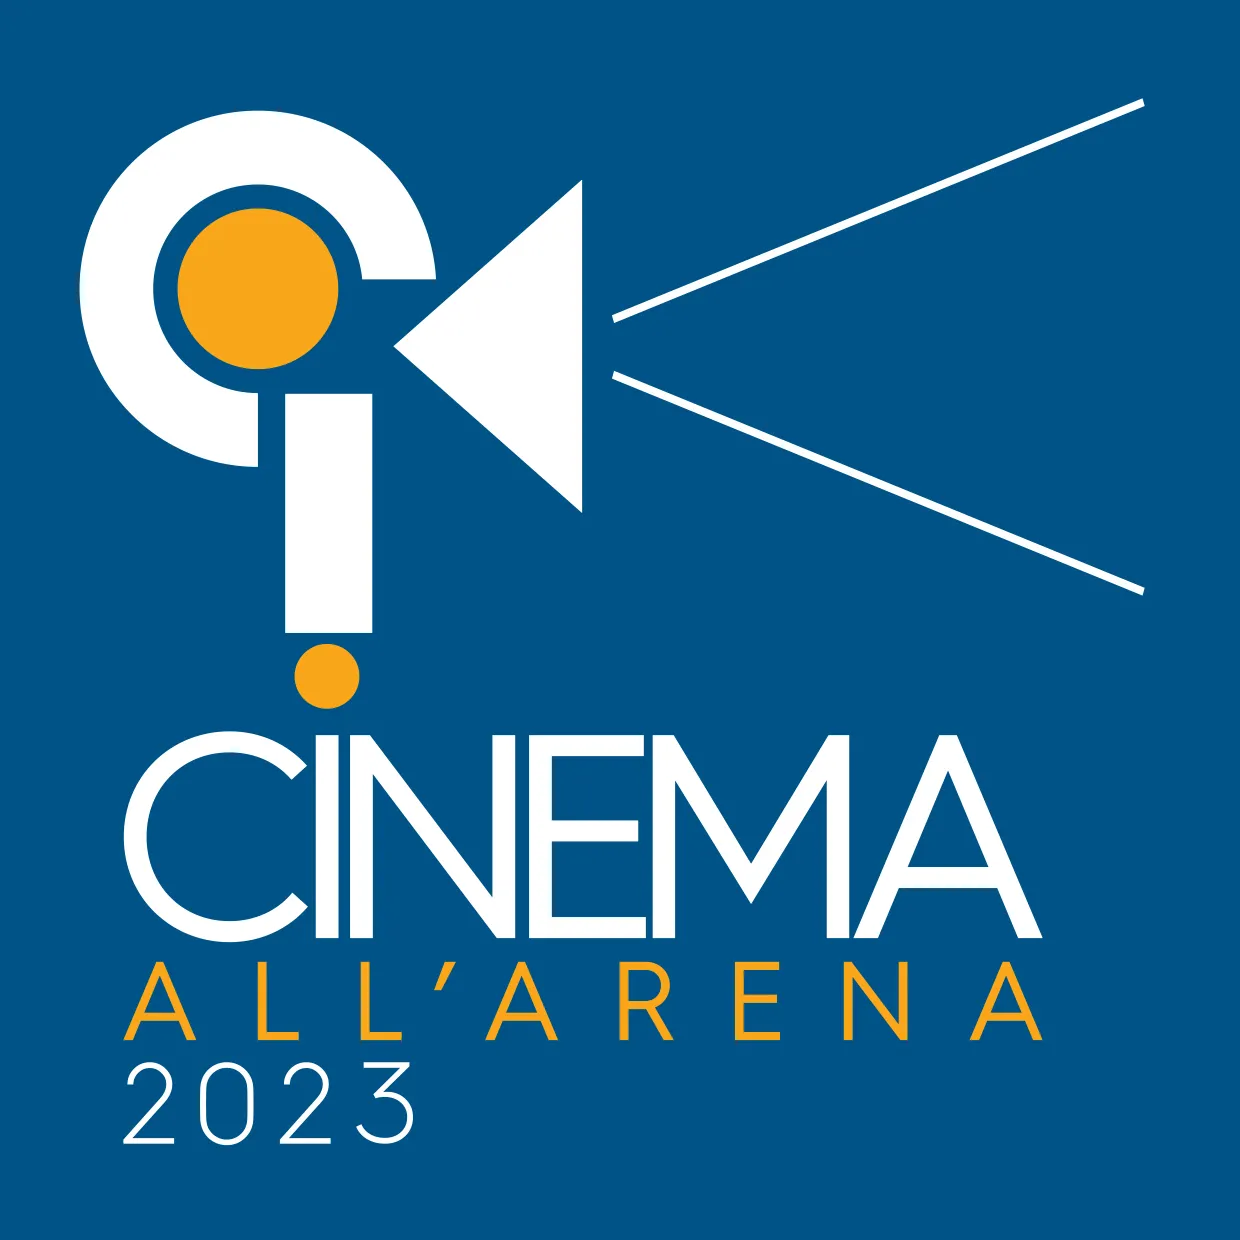 Cinema all’Arena: dal 27 giugno al 3 agosto ad Alba, dodici film selezionati dal cinecircolo Il Nucleo